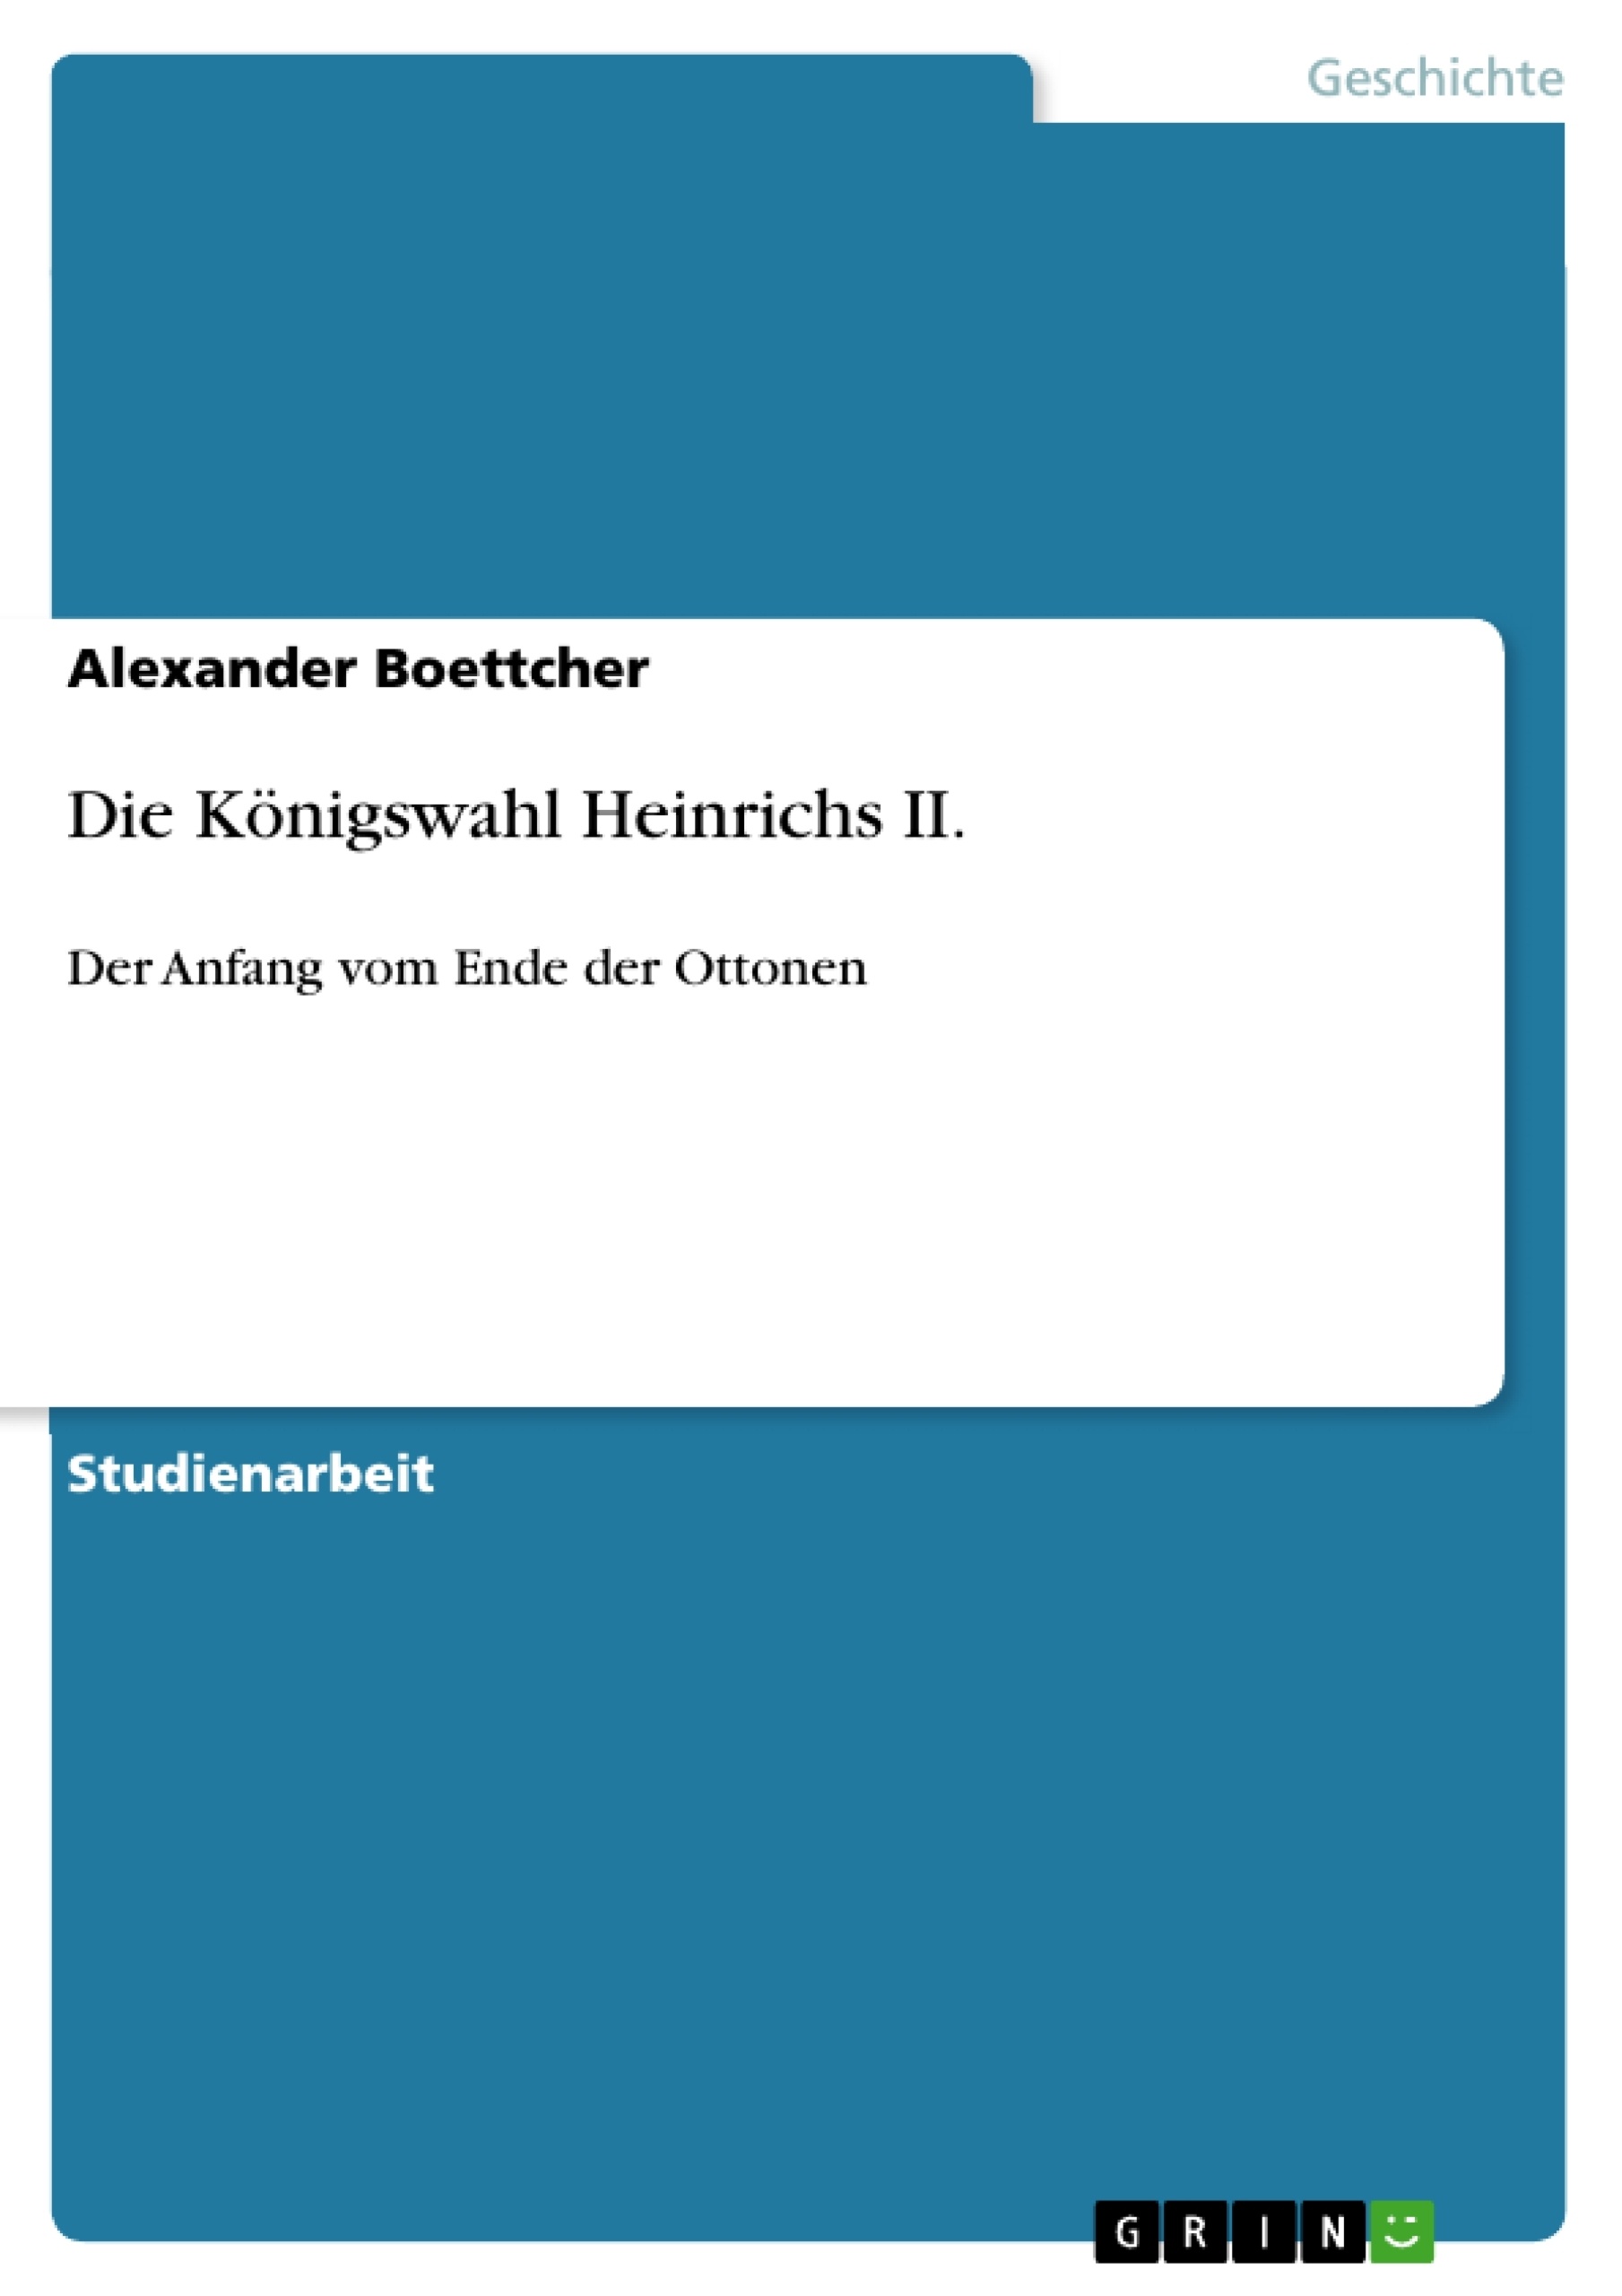 Título: Die Königswahl Heinrichs II.